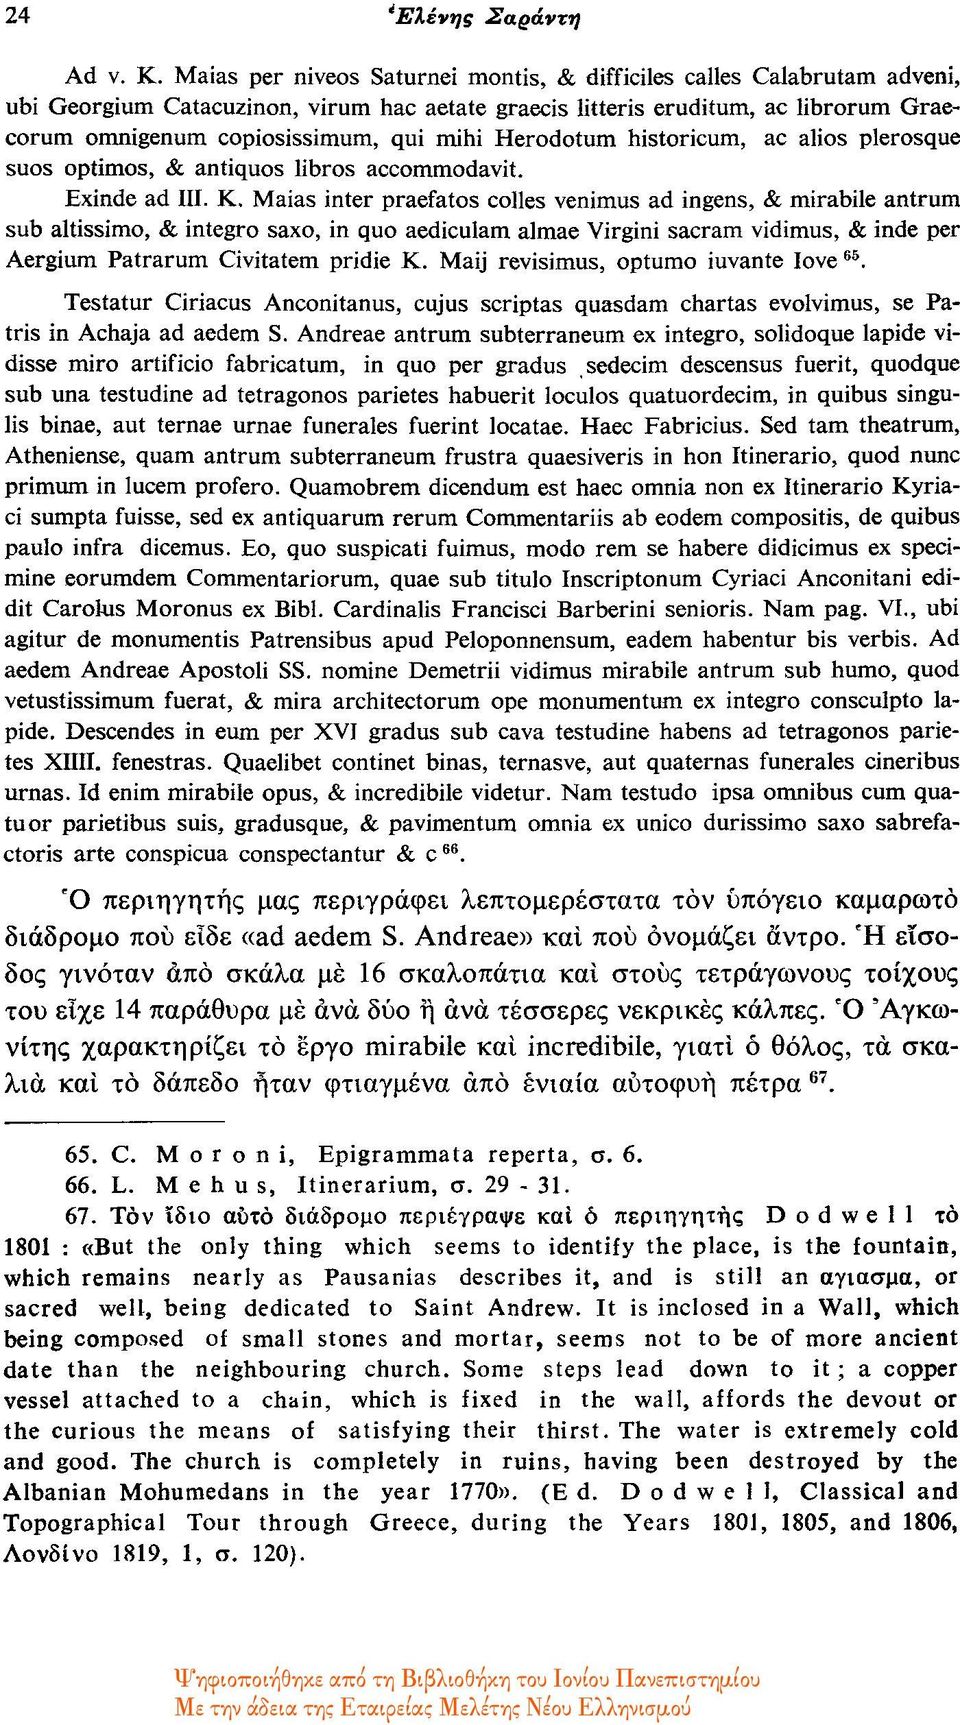 Herodotum historicum, ac alios plerosque suos optimos, & antiquos libros accommodavit. Exinde ad III.